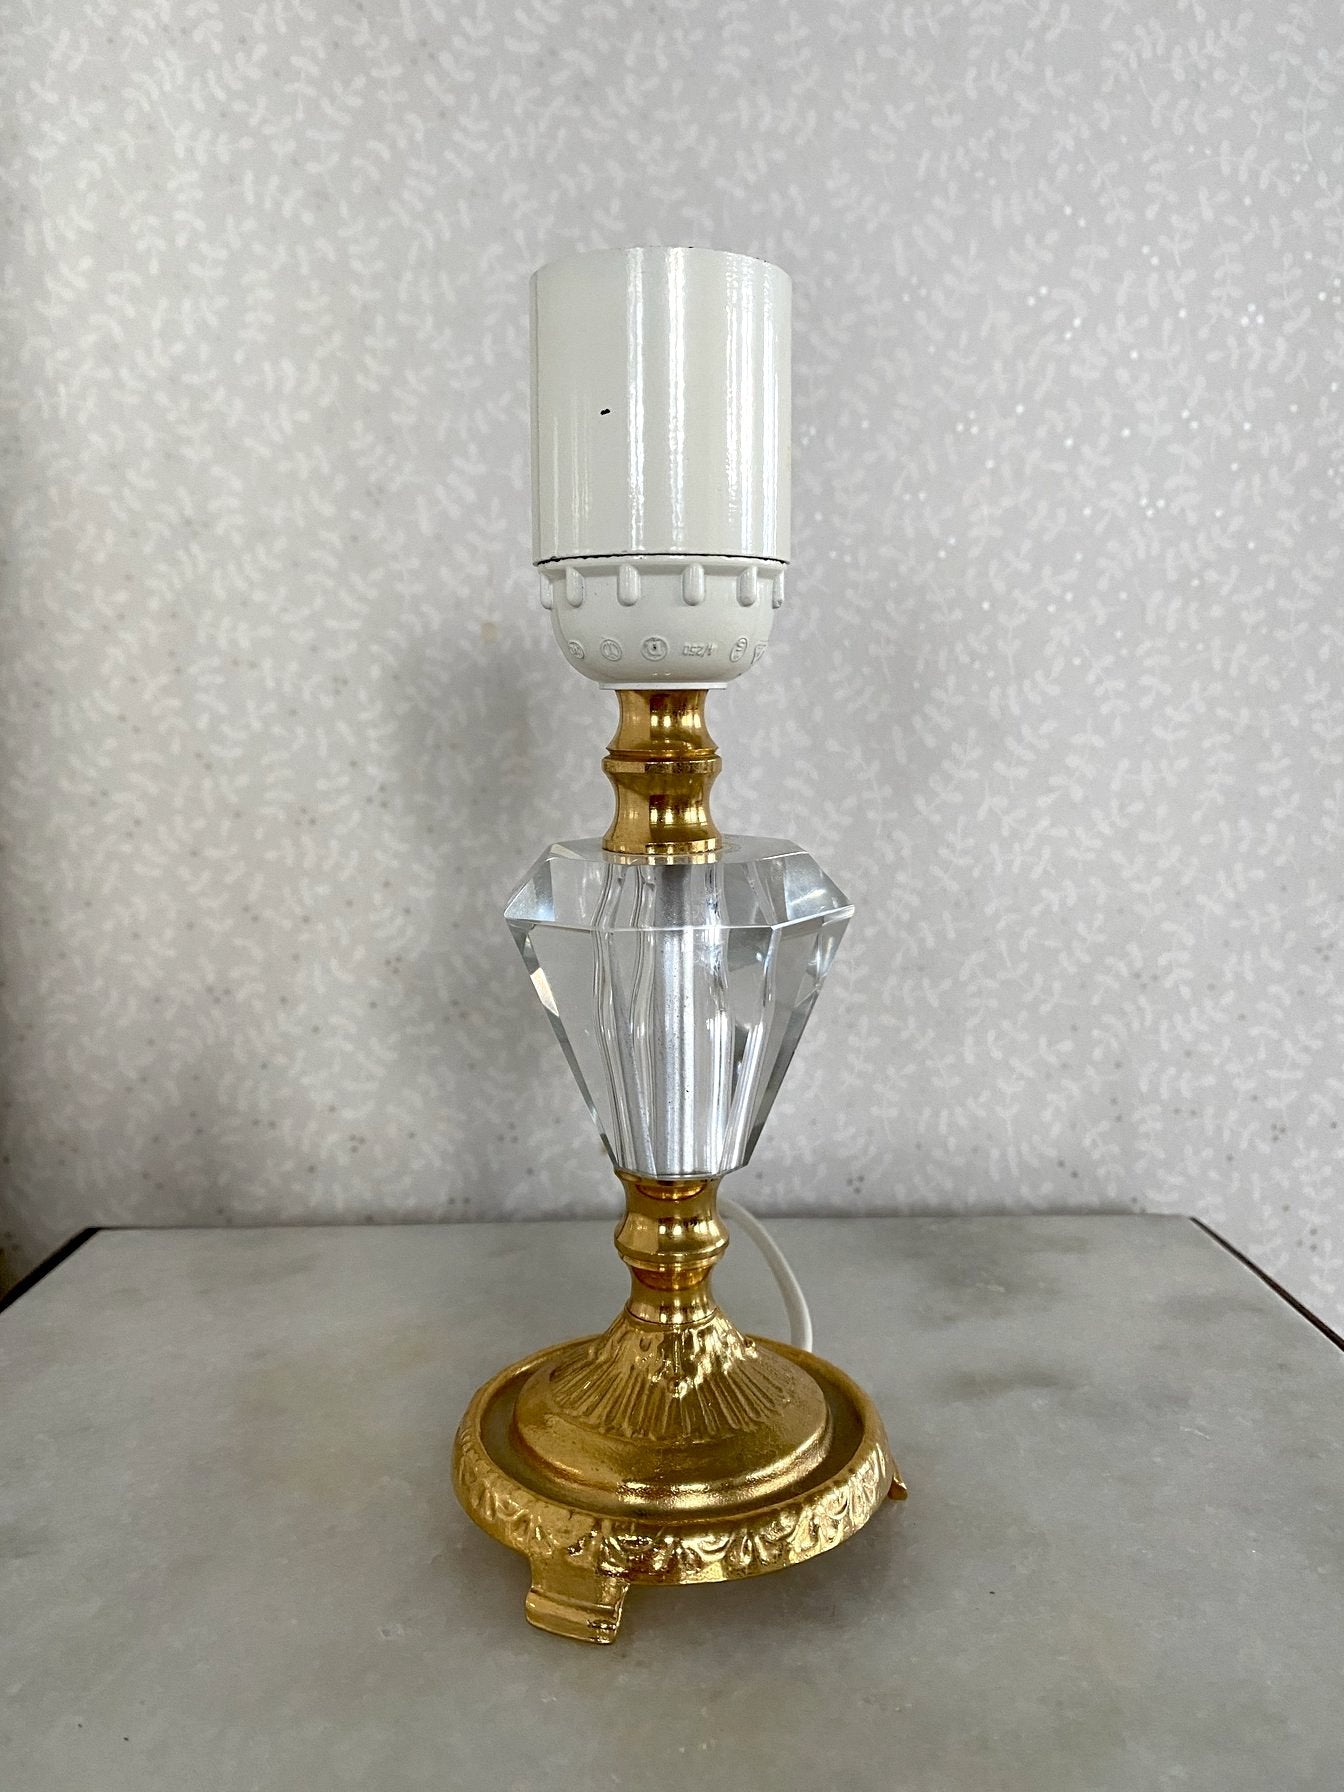 Lampfot i mässing och glas i form av diamant